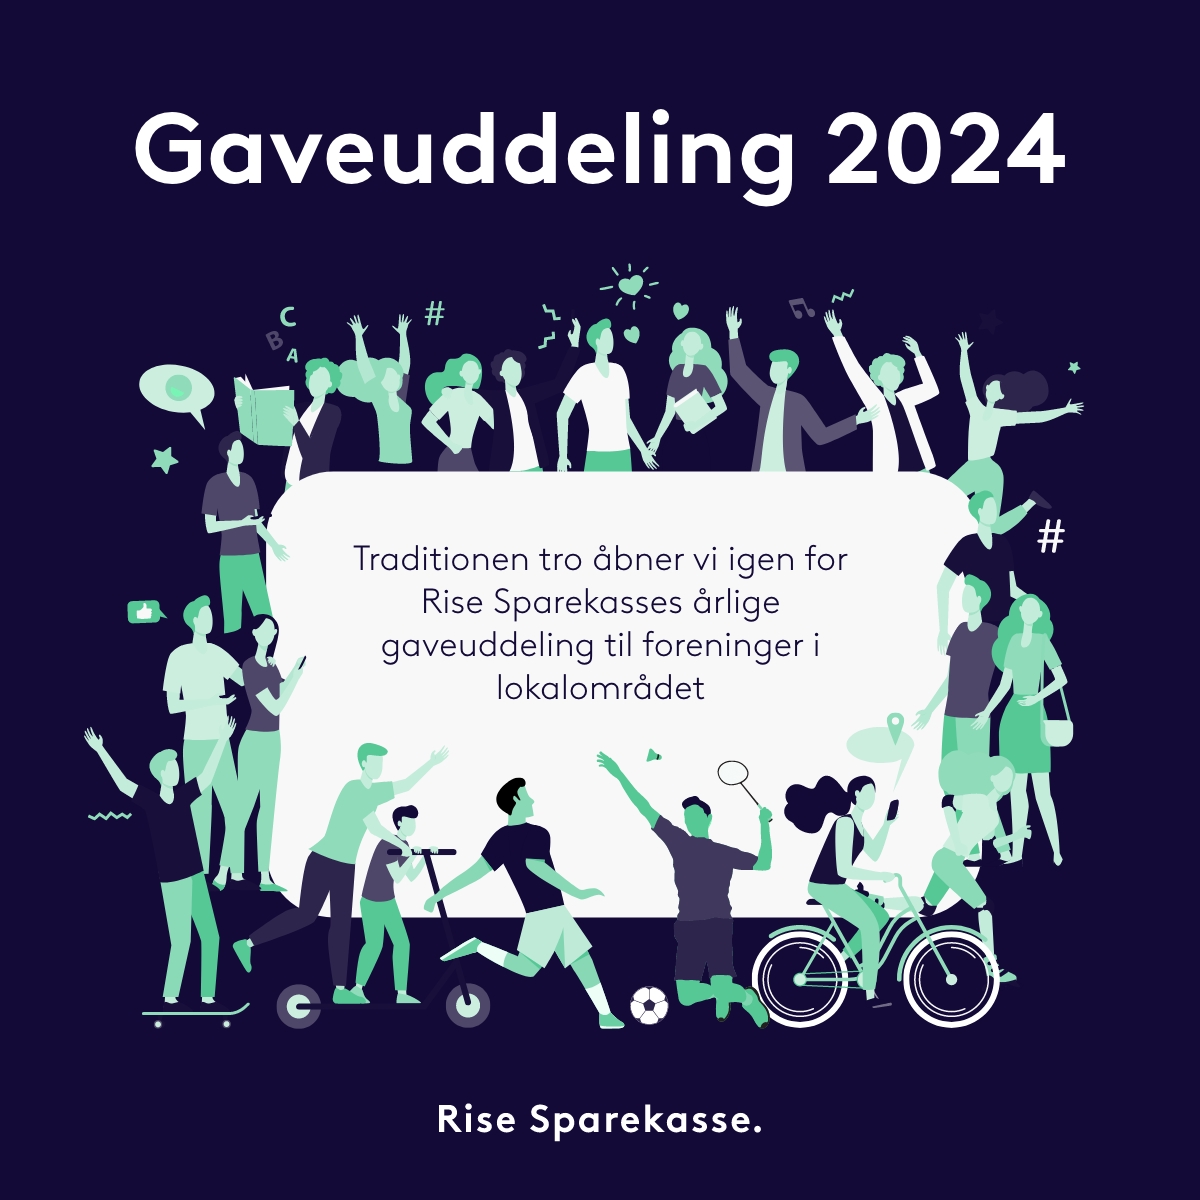 Rise Gaveuddeling 2024 - SoMe Kvadratisk